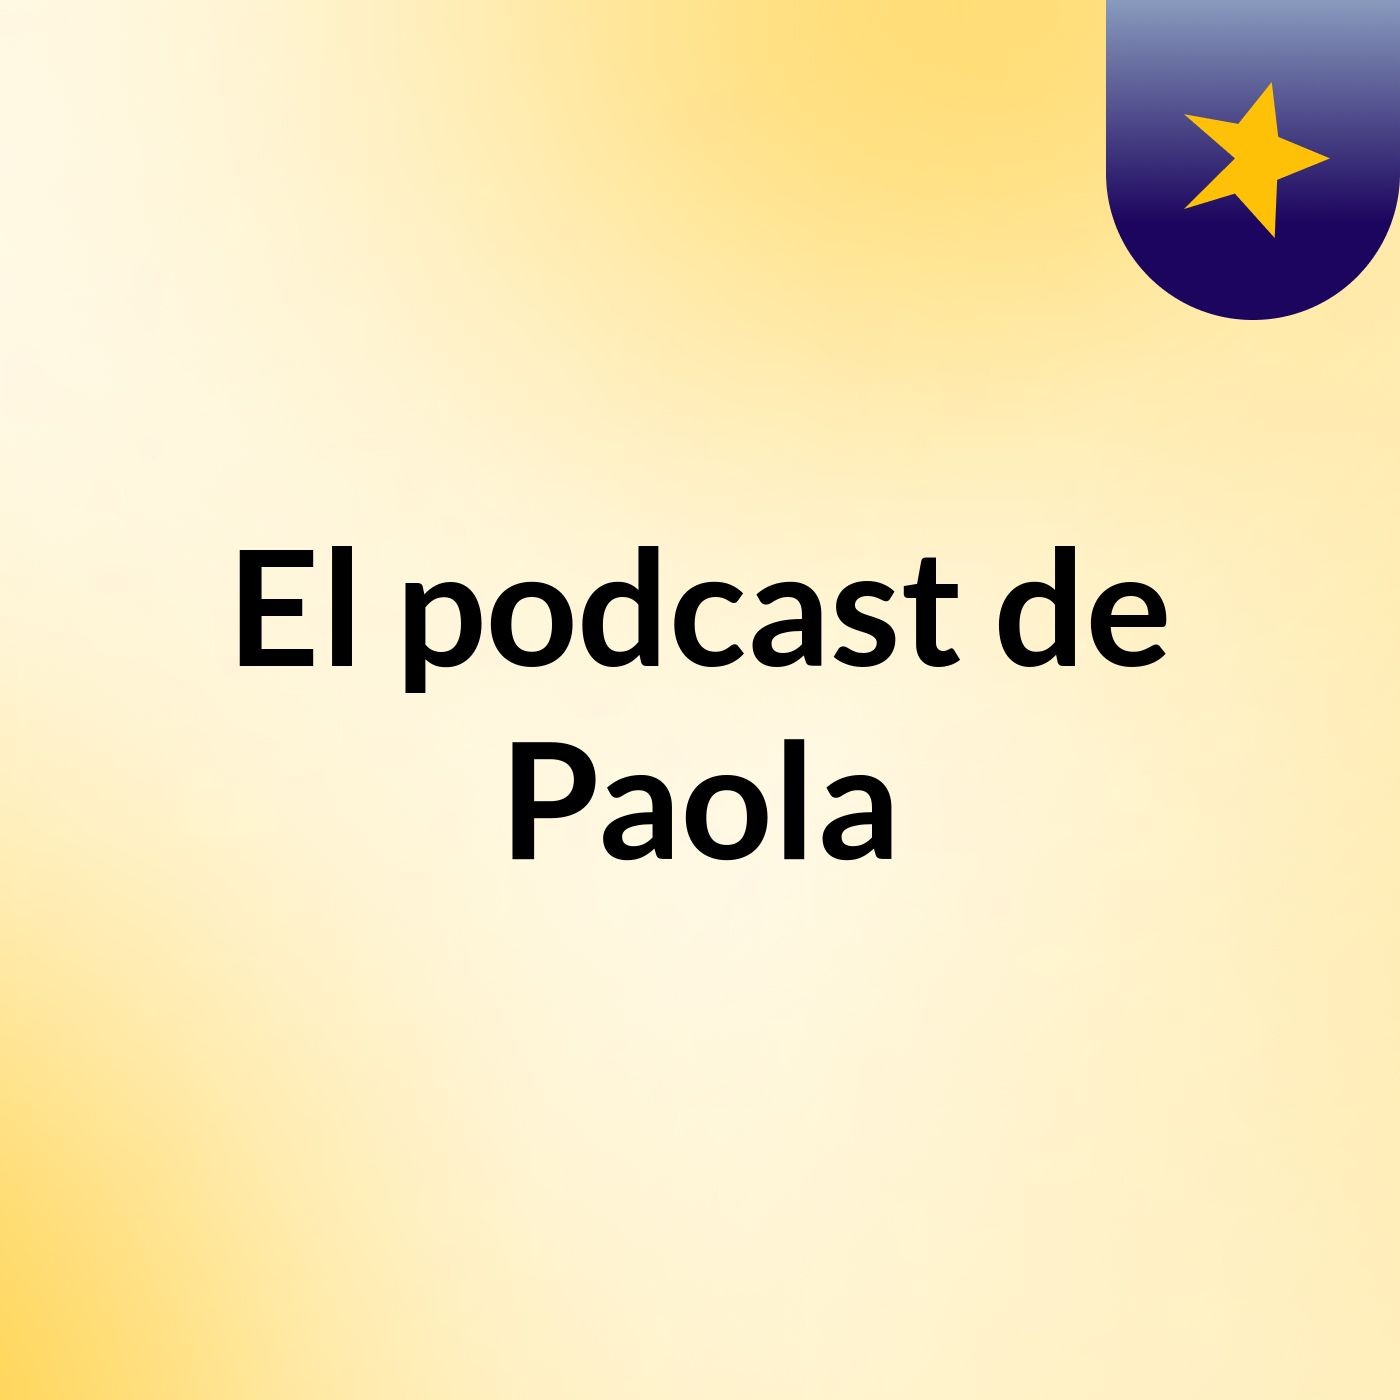 El podcast de Paola